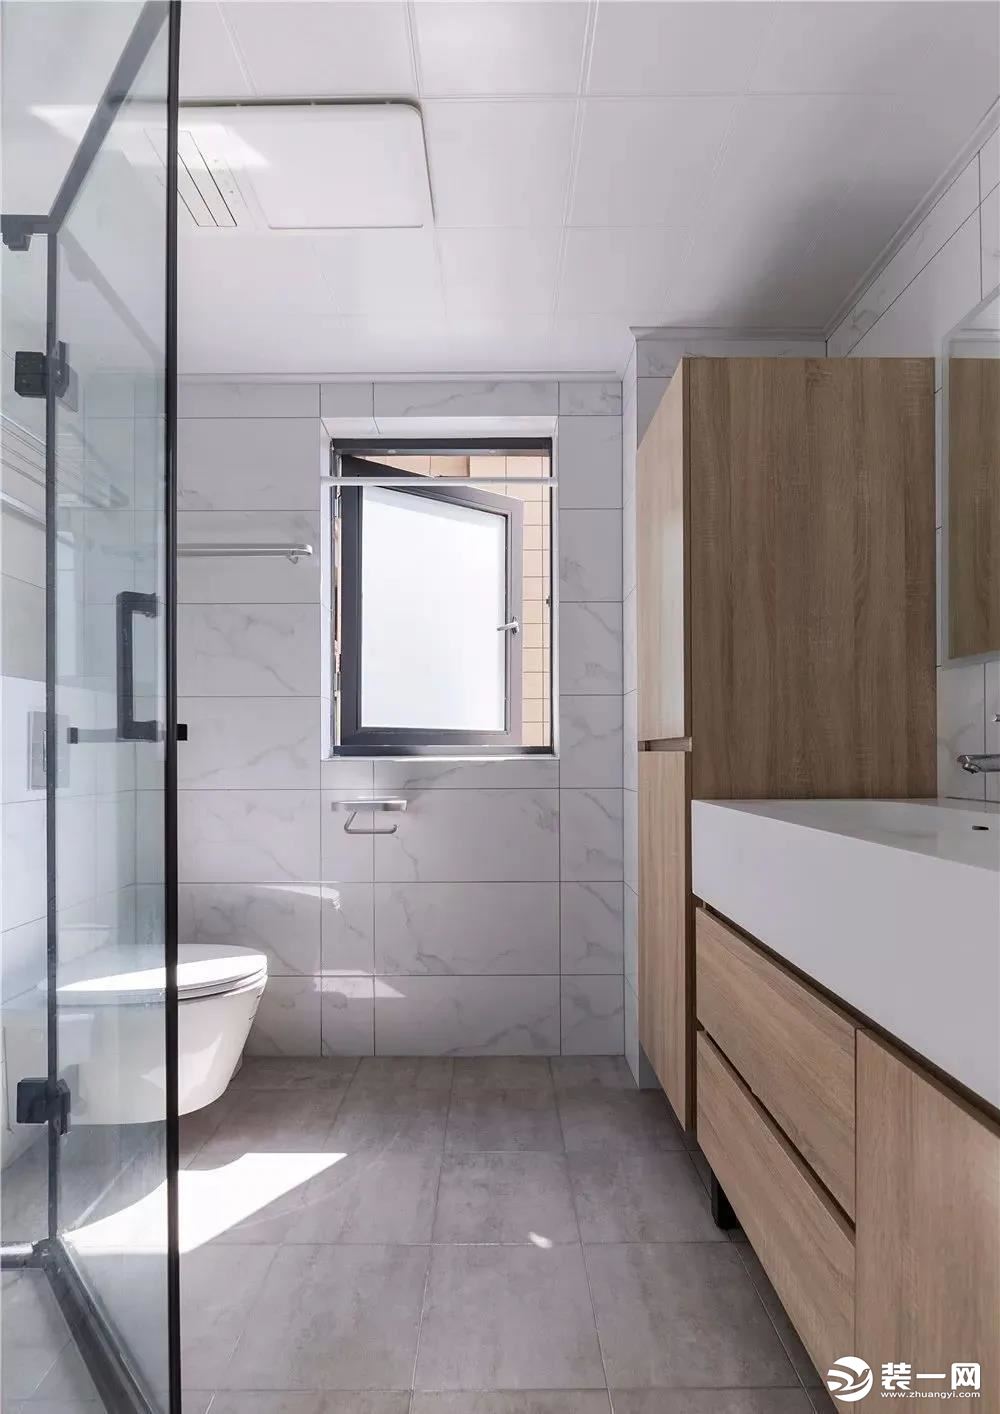 卫生间简洁明亮，在满足正常使用面积基础上加大储物空间，增强功能性，木色浴室柜为冷色空间增加自然温暖的